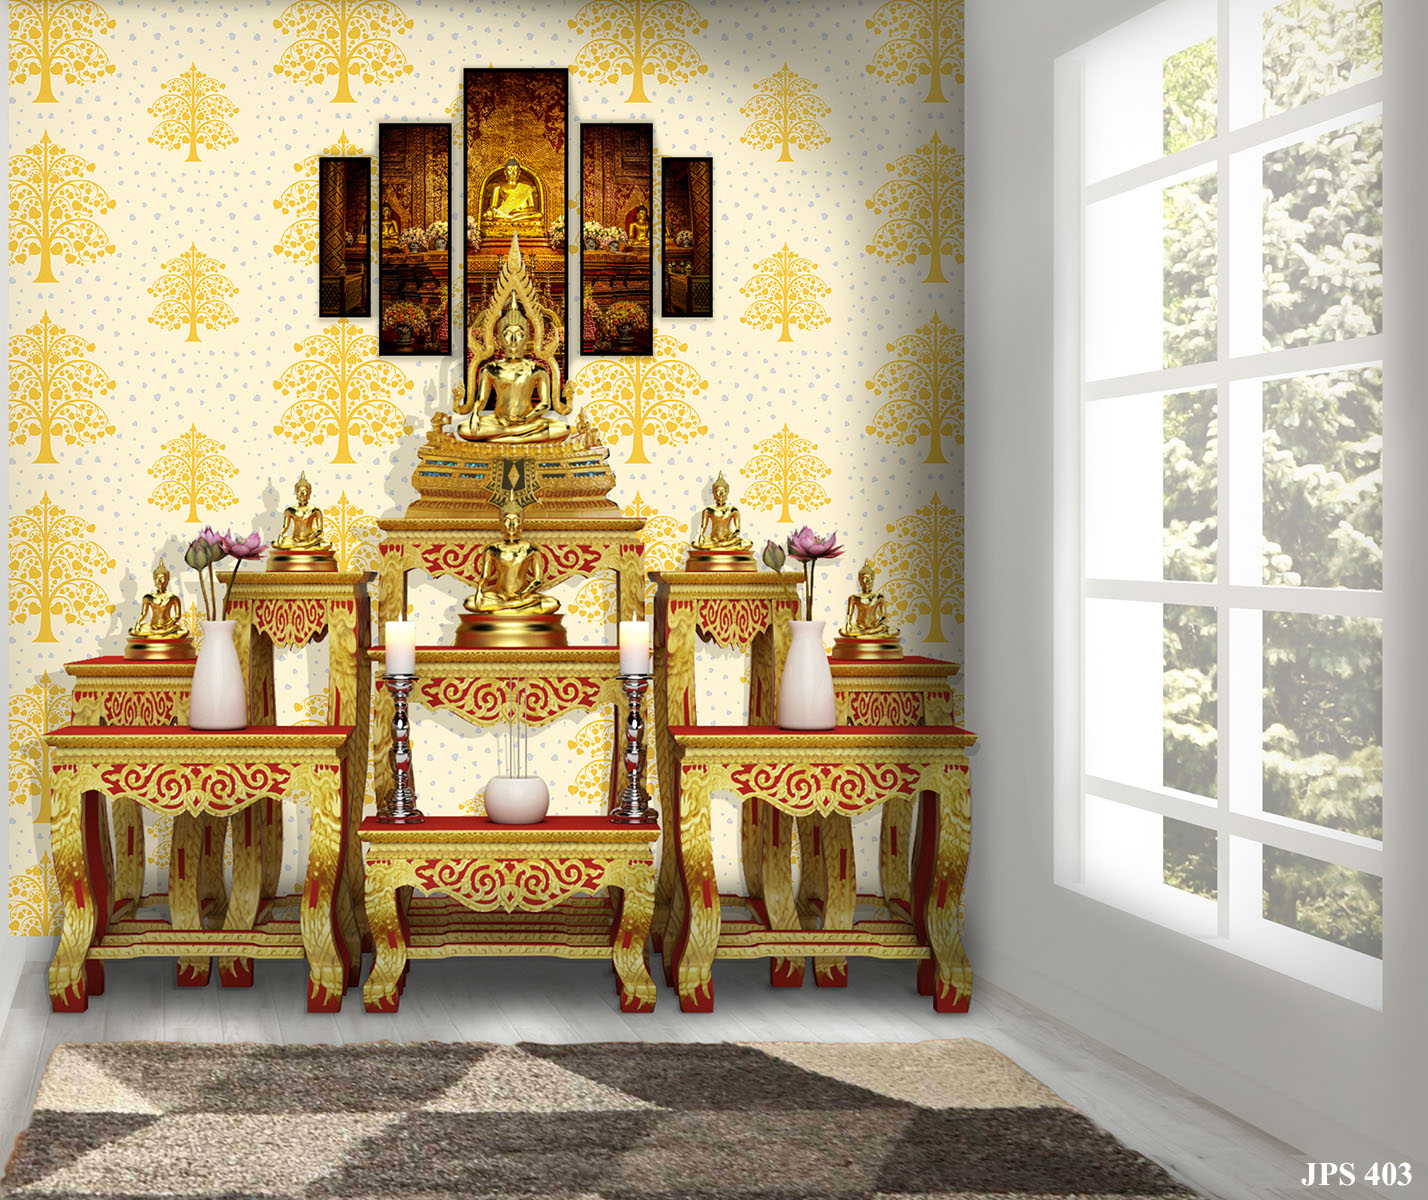 ตัวอย่างห้องพระ ตกแต่งด้วยวอลเปเปอร์ลายต้นโพธิ์เงิน โพธิ์ทอง สีขาว